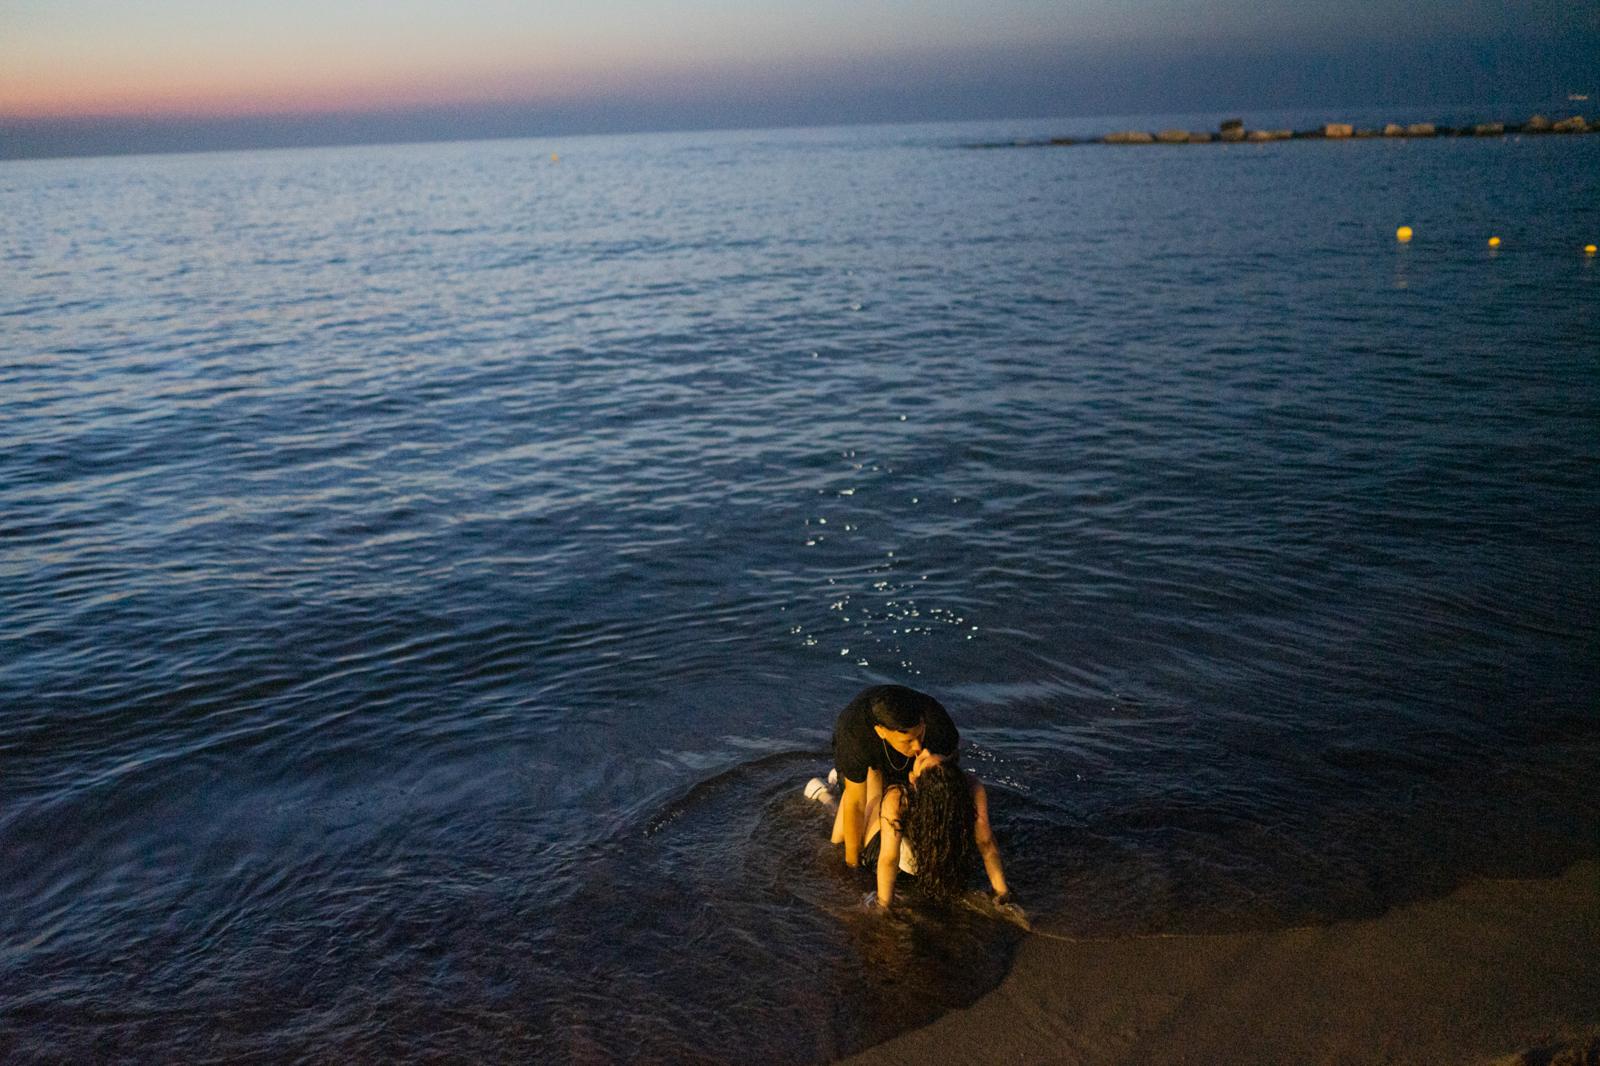 A couple kisses on the beach th...elona, Spain, on June 24, 2022.